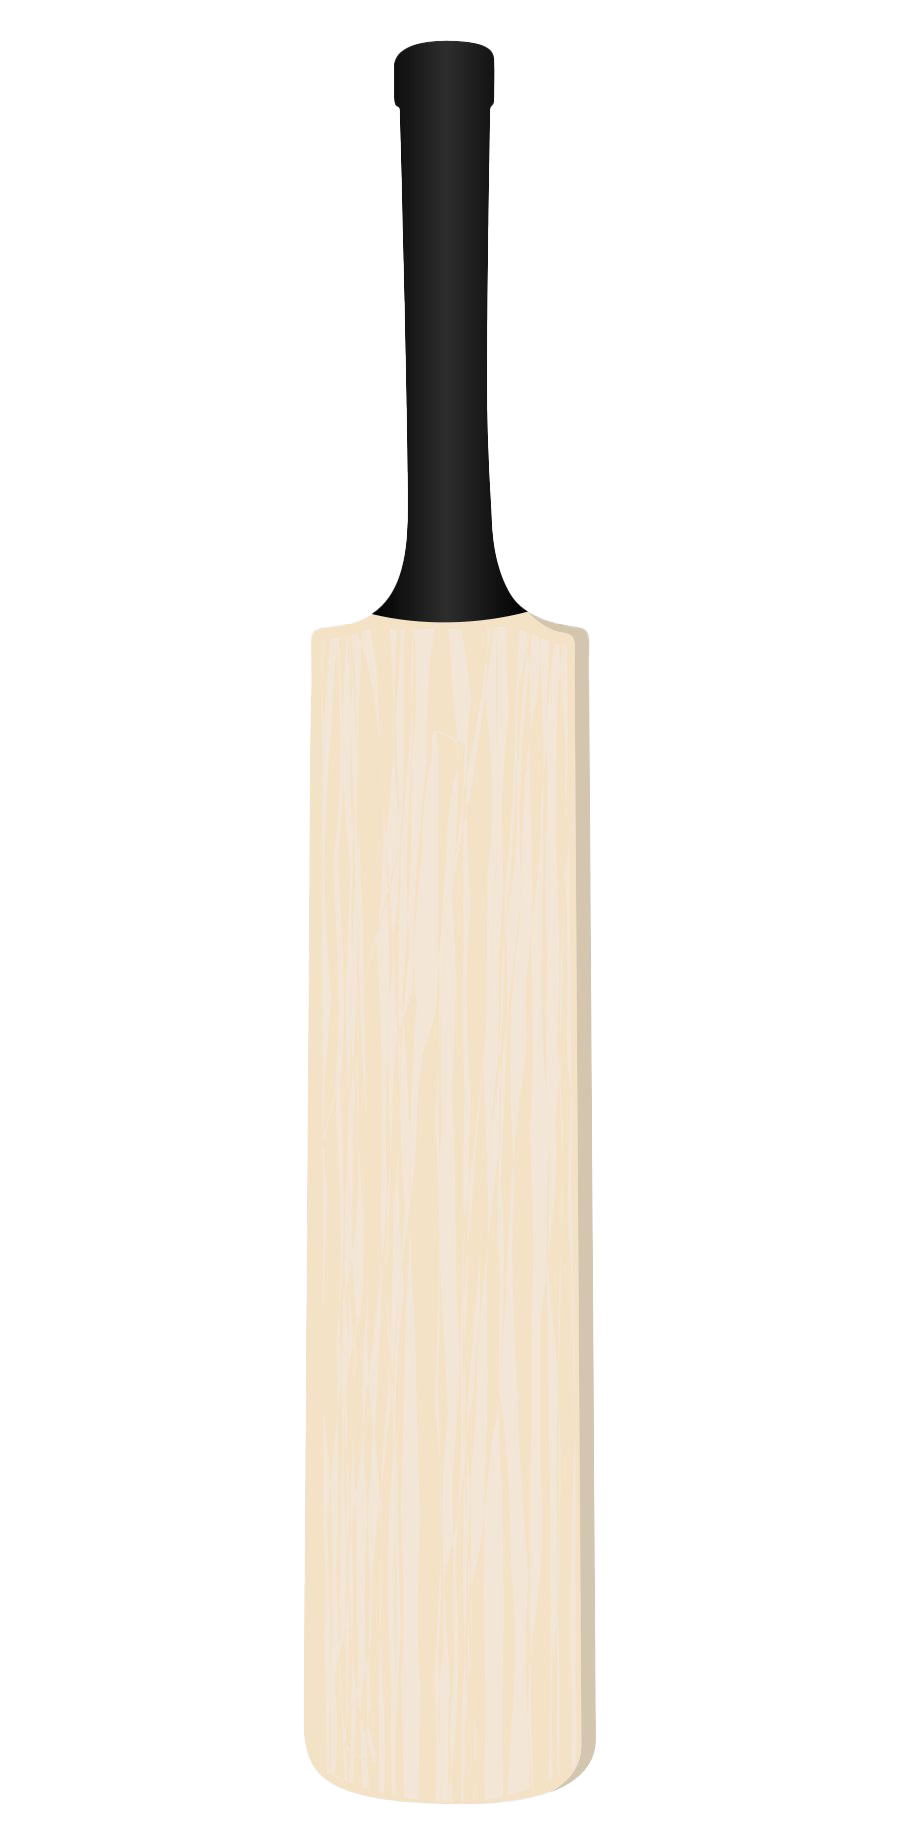 Plain Cricket Bat PNG Image